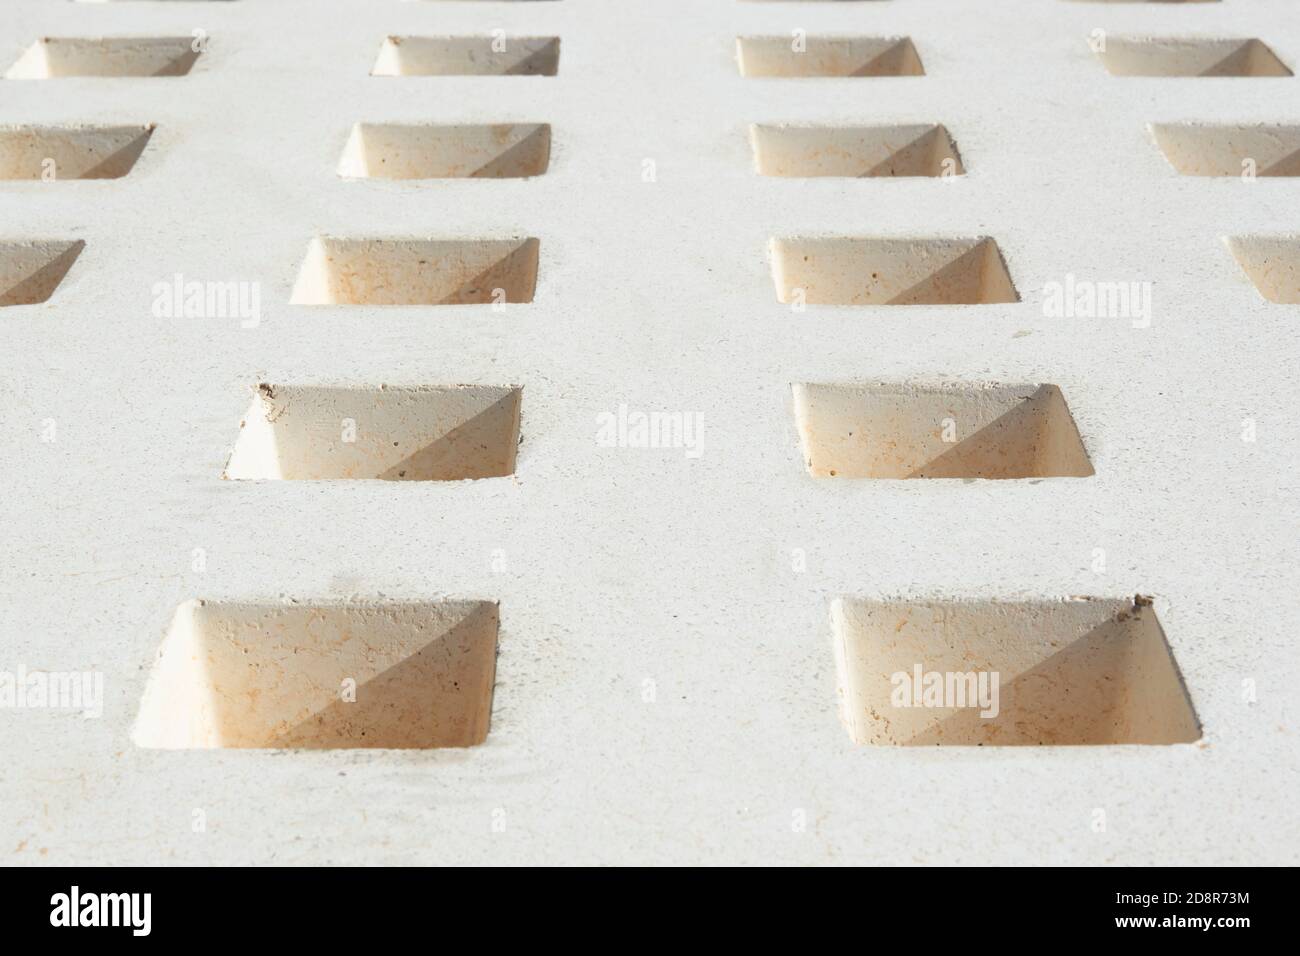 trous dans la pierre blanche d'un banc formant un modèle de carrés. Andalousie, Espagne Banque D'Images